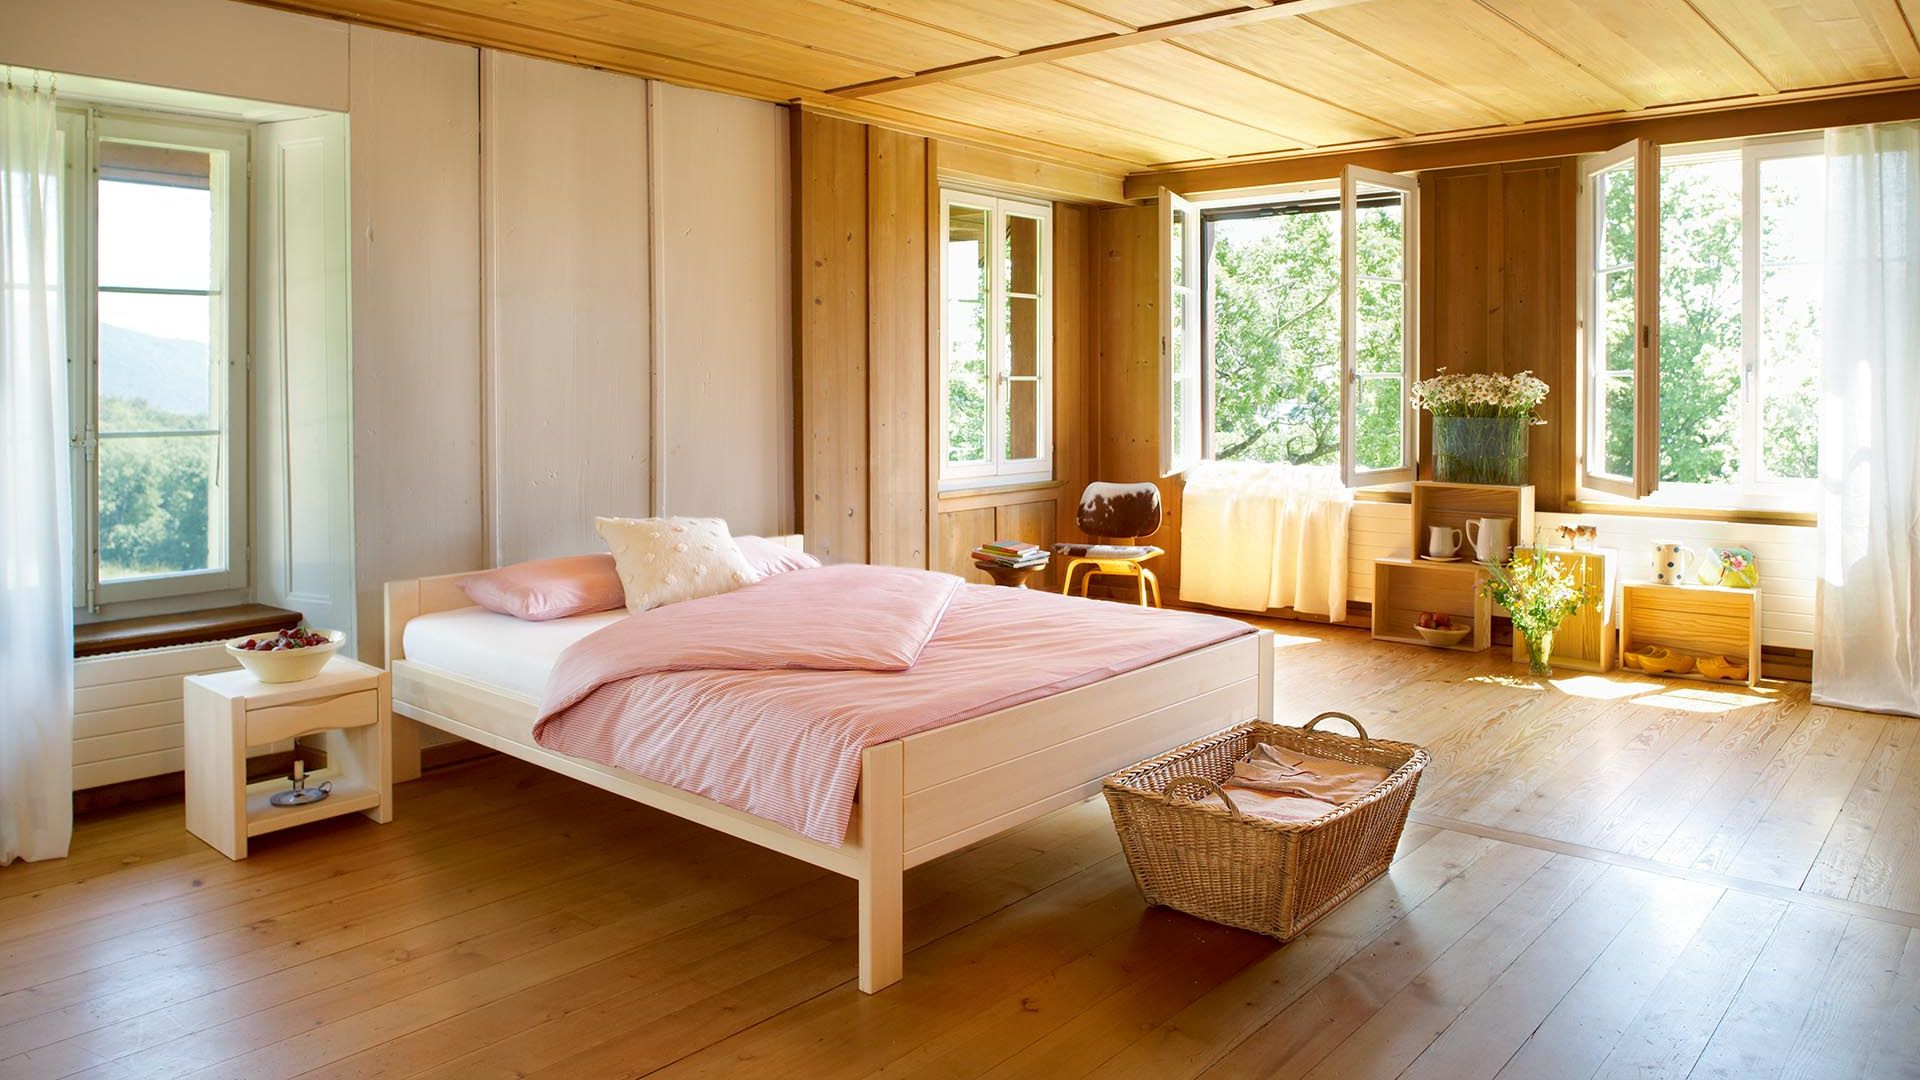 Confort - Le lit Confort de Hüsler Nest comblera tous vos vœux en matière d’agrément et de sobriété.